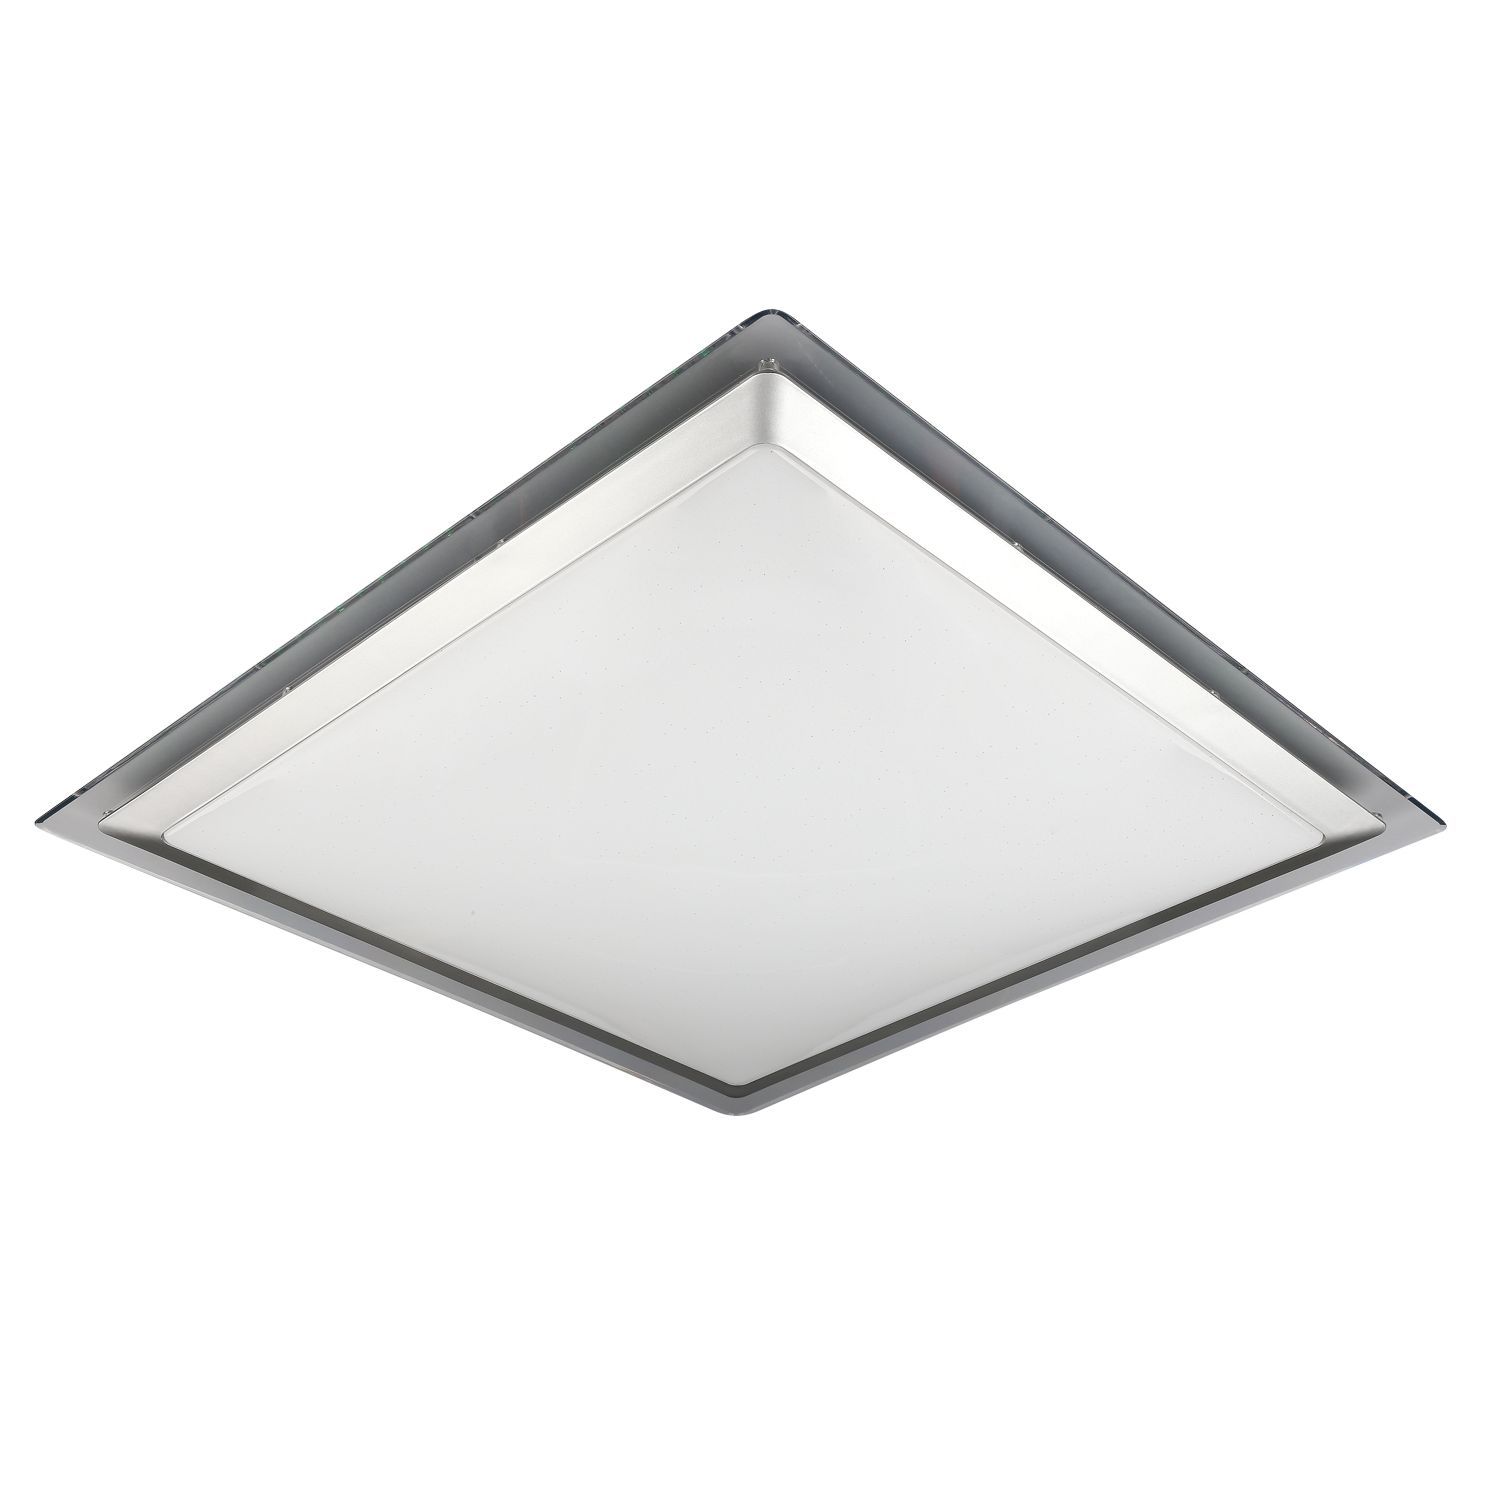 Светильник светодиодный  56 см, 60W, 4200 К, OML-47117-60 Omnilux, белый, дневной свет